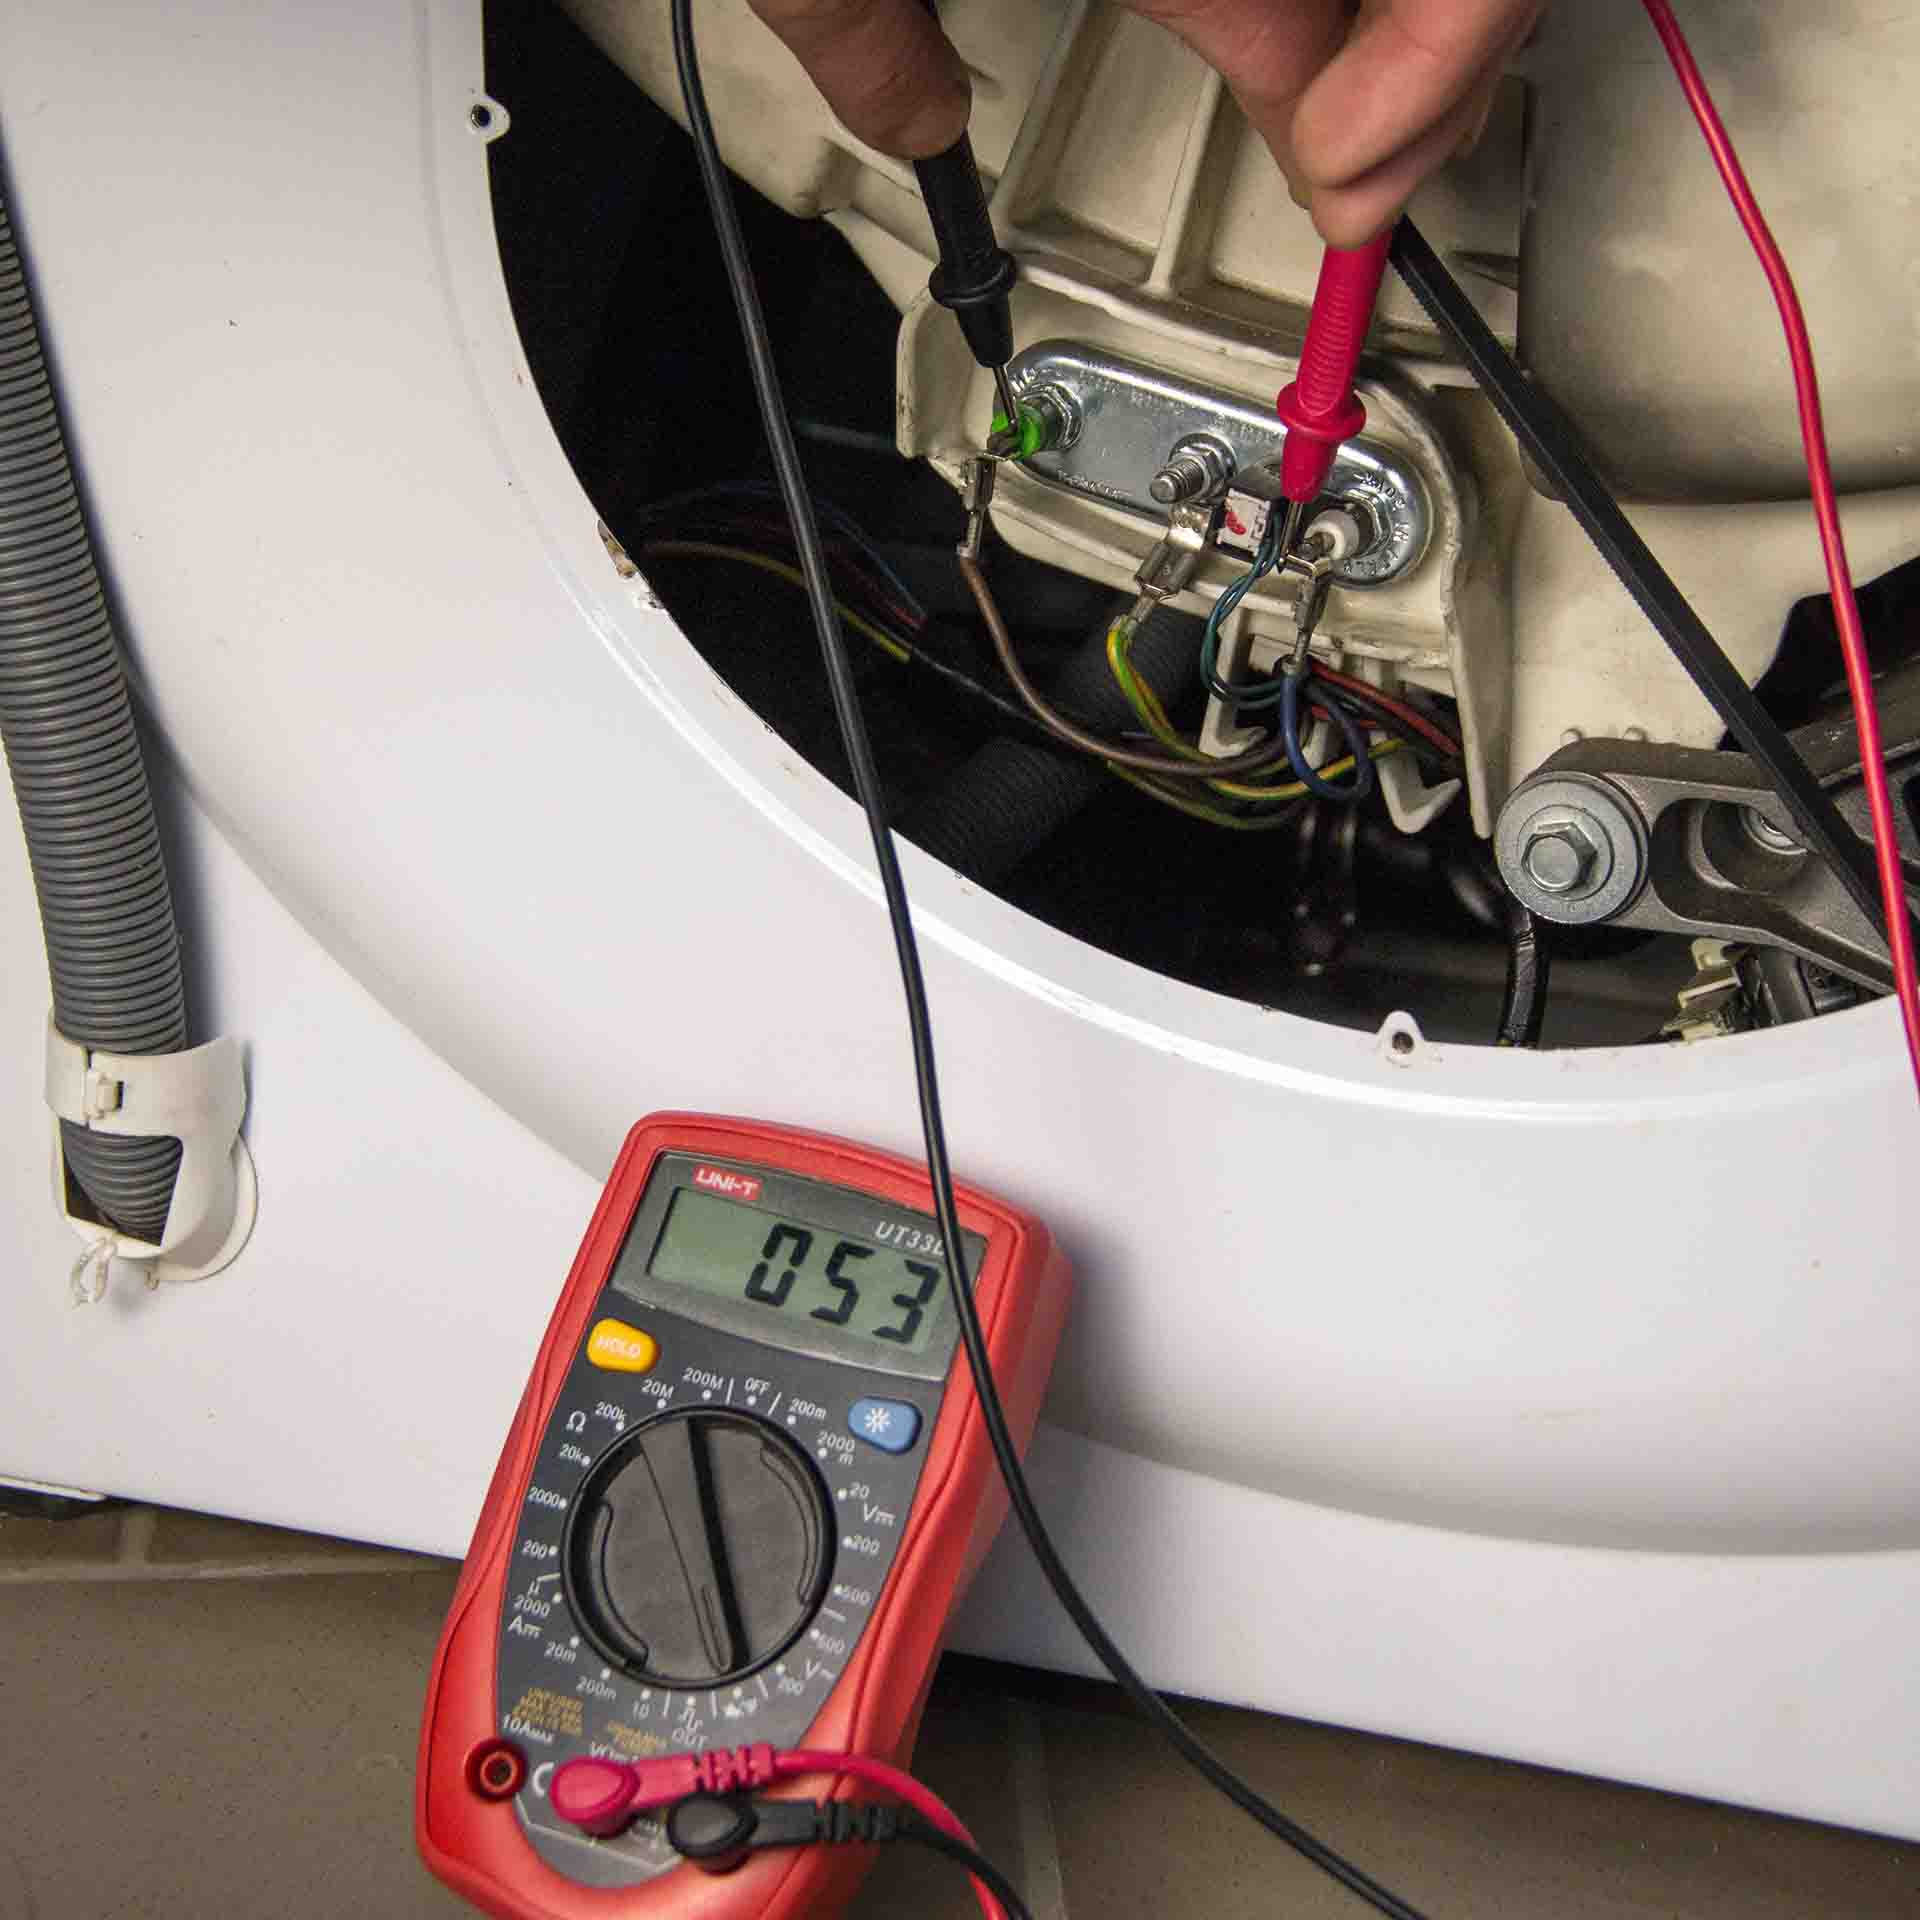 Как проверить регулируемый термостат водонагревателя - ремонт и дизайн от zerkalaspb.ru